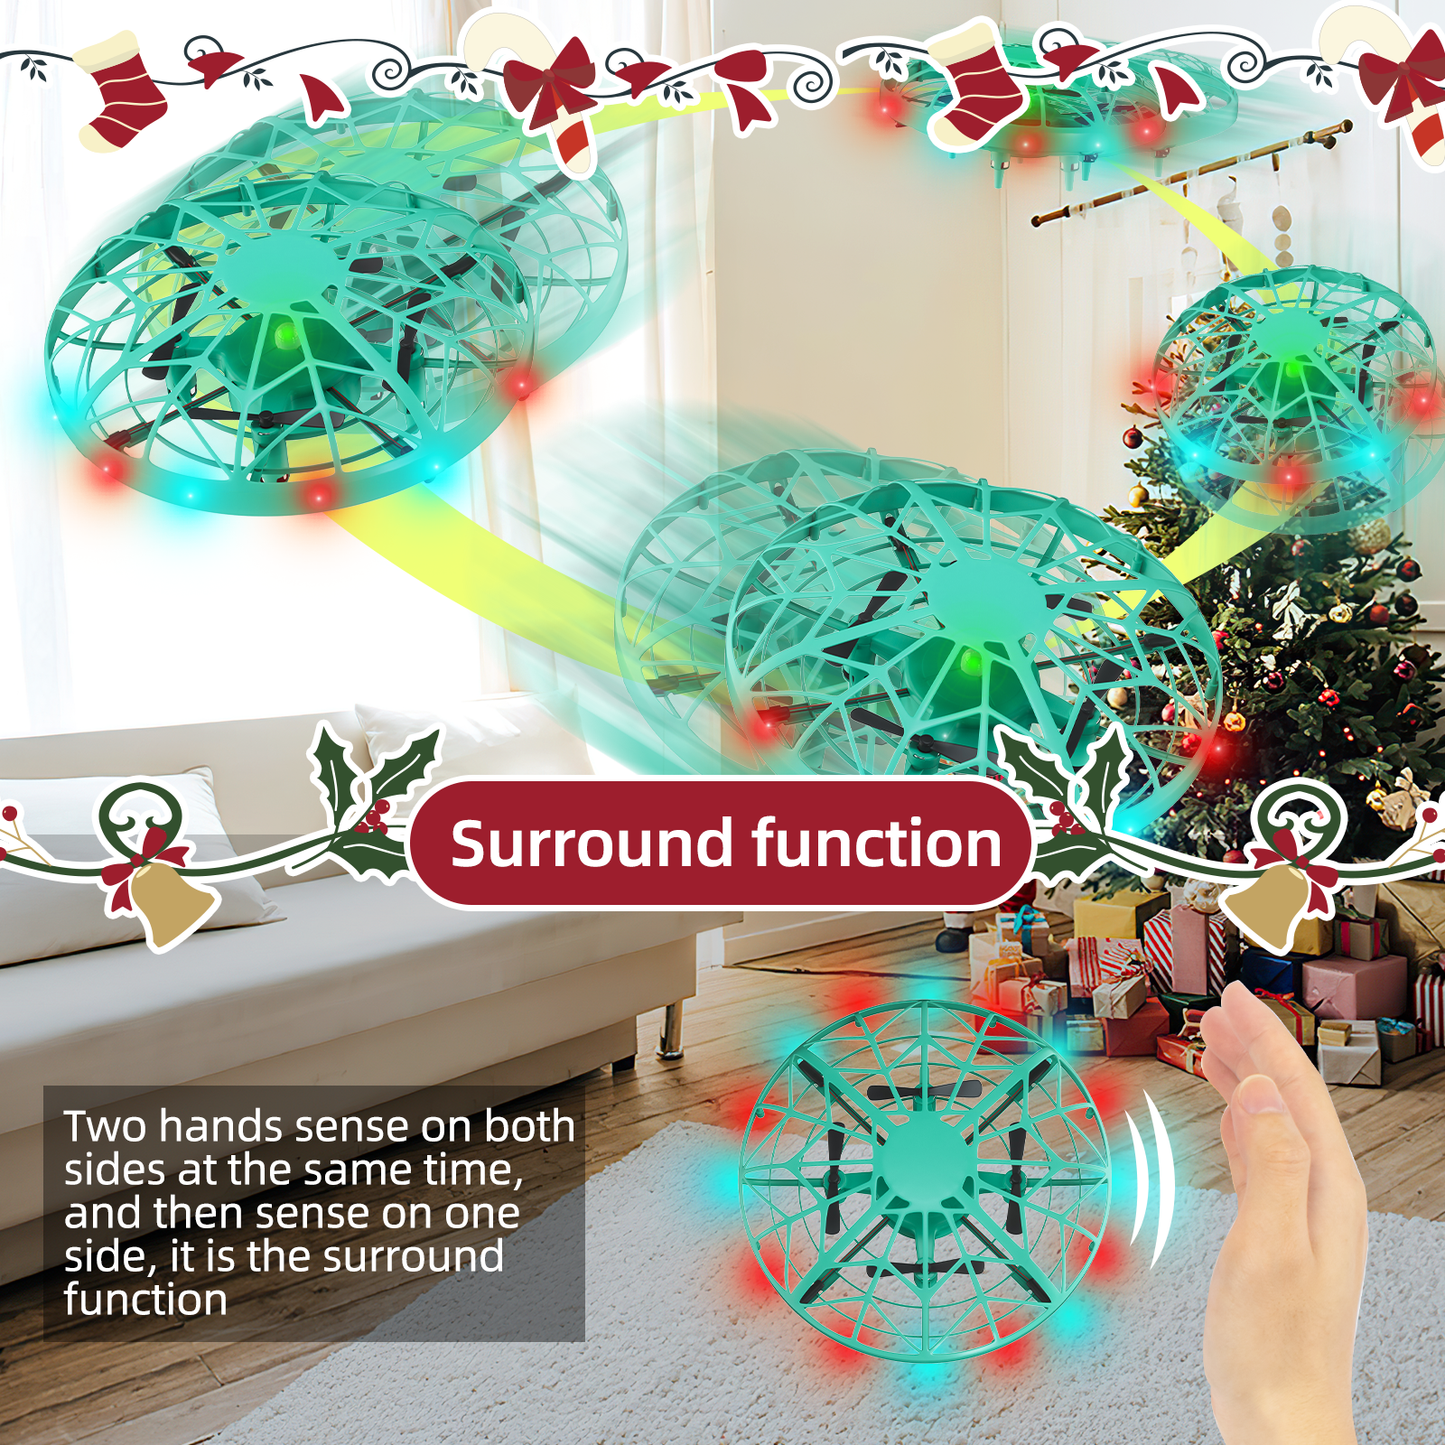 UNIH 手動無人機、具有 360° 滾動和環繞功能的飛行玩具、兒童迷你 UFO 無人機、10 歲男孩無人機玩具